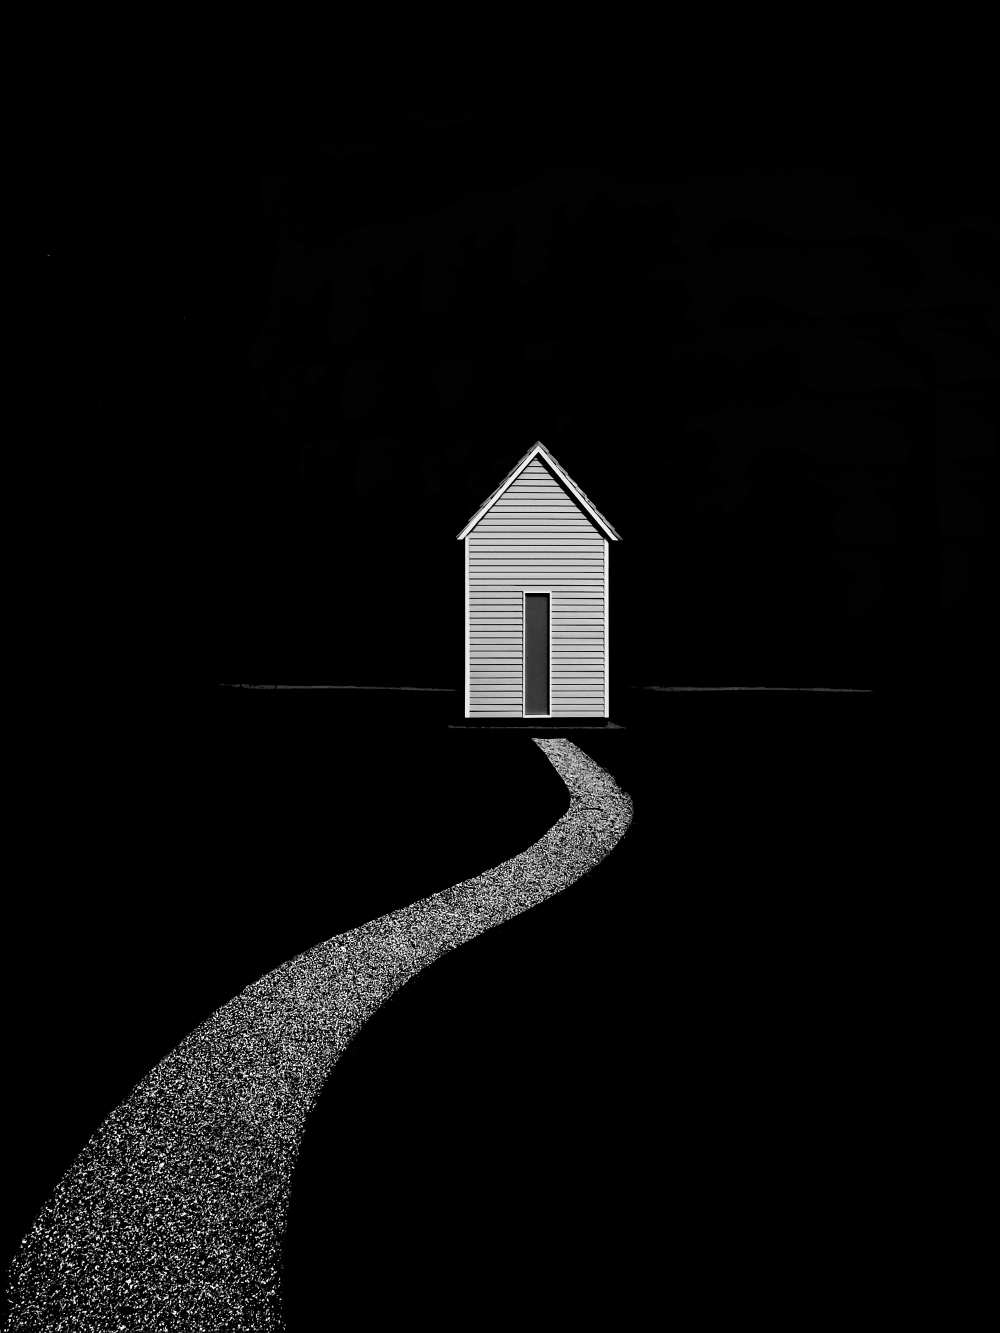 The way home [2] de Roberto Parola